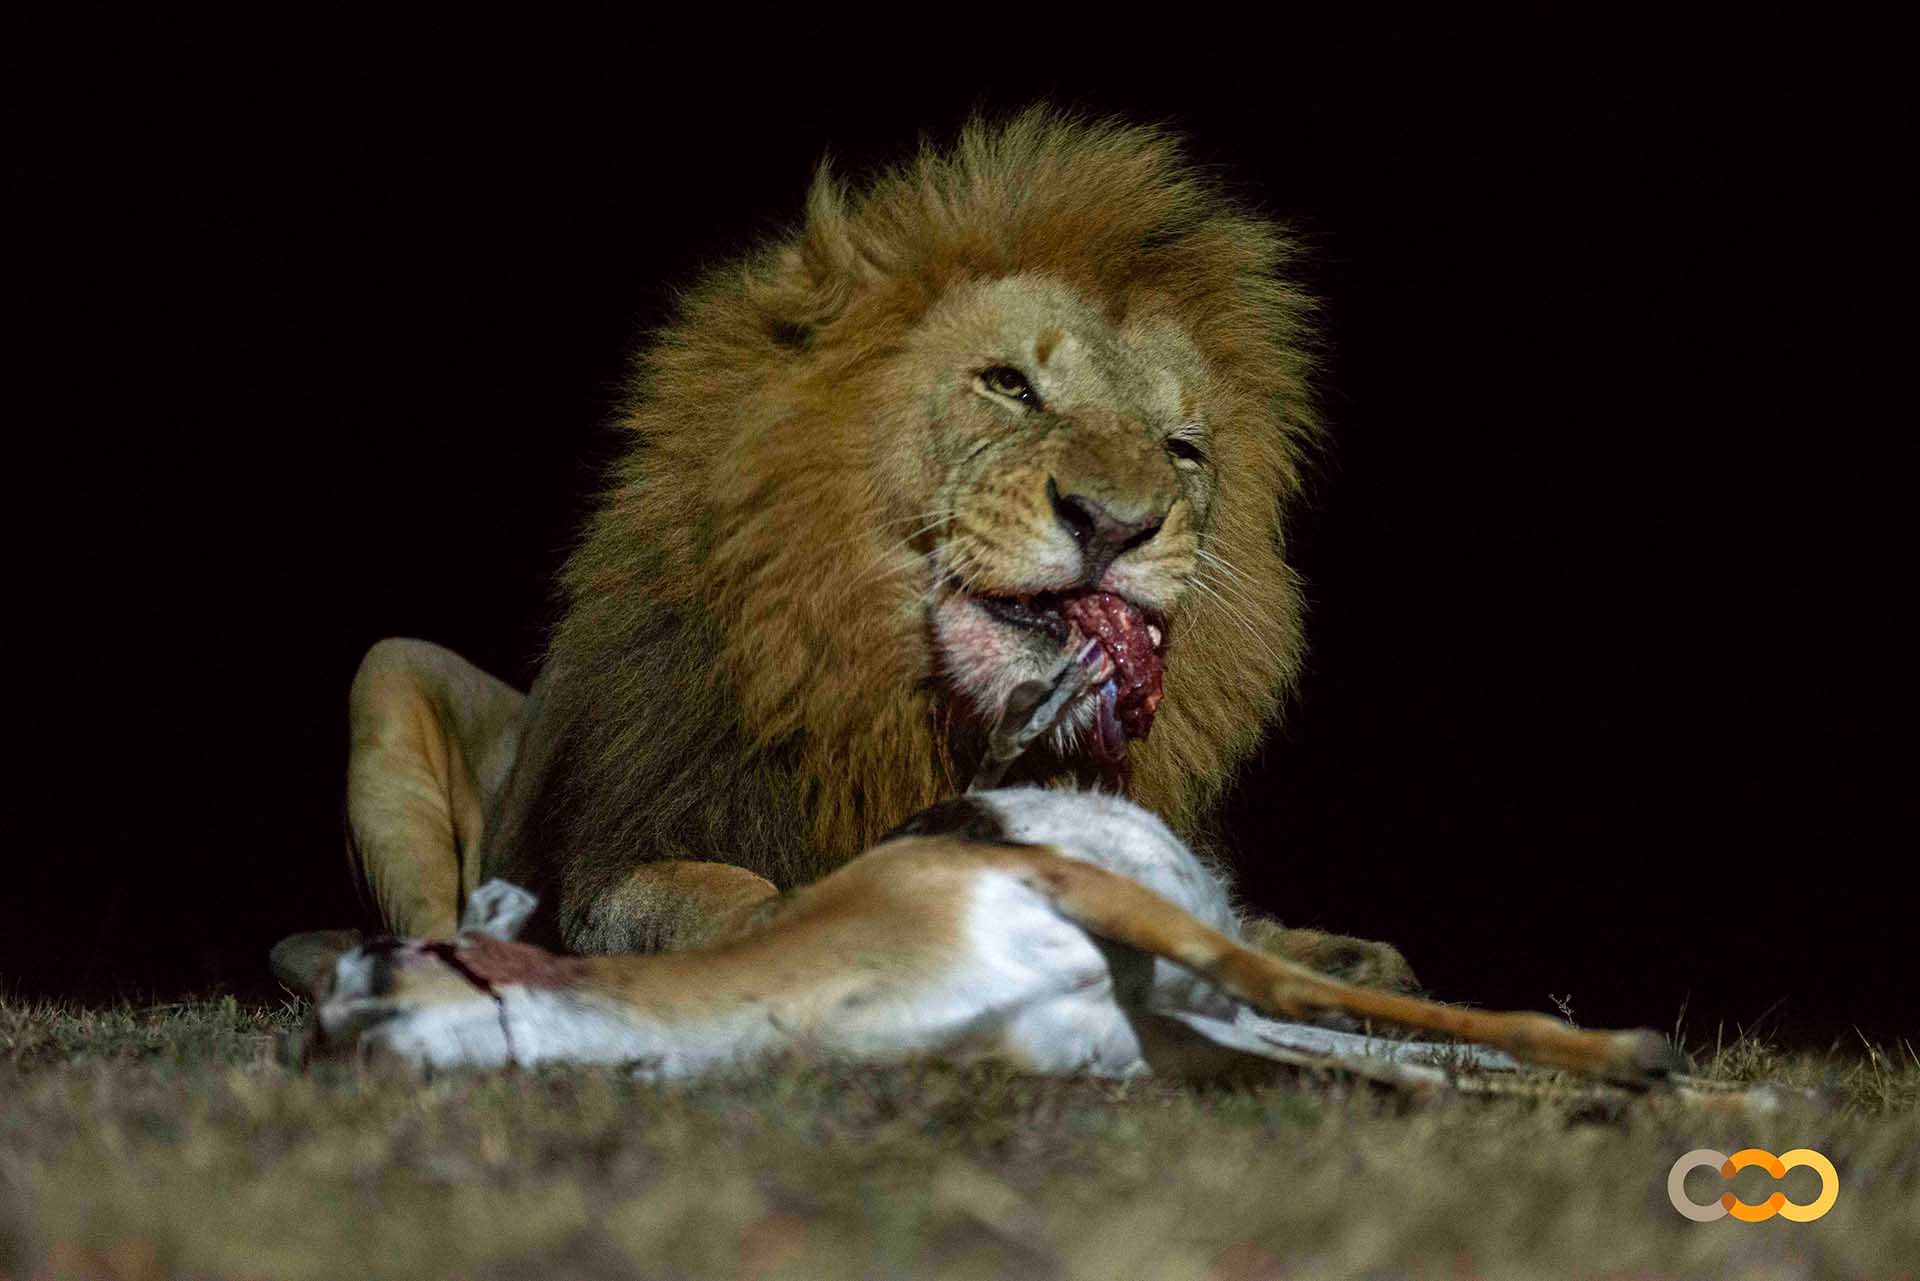 León comiendo de noche